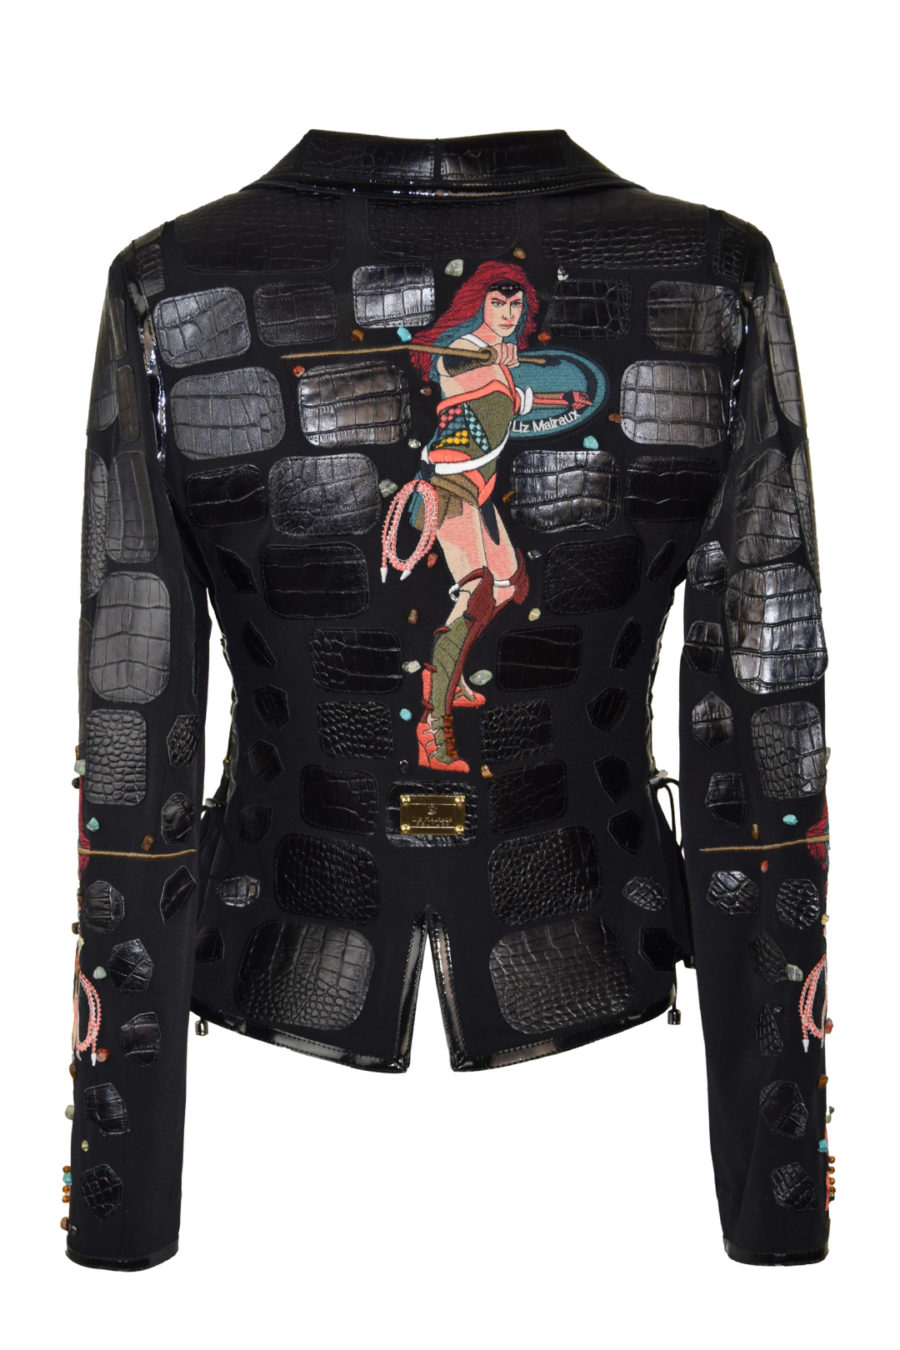 Haute Couture-Jacke mit "fantasy-embroidery"-5 Motive, handappliziert mit 145 Kristallen und Natursteinen Lederpatches in Kroko-Optik